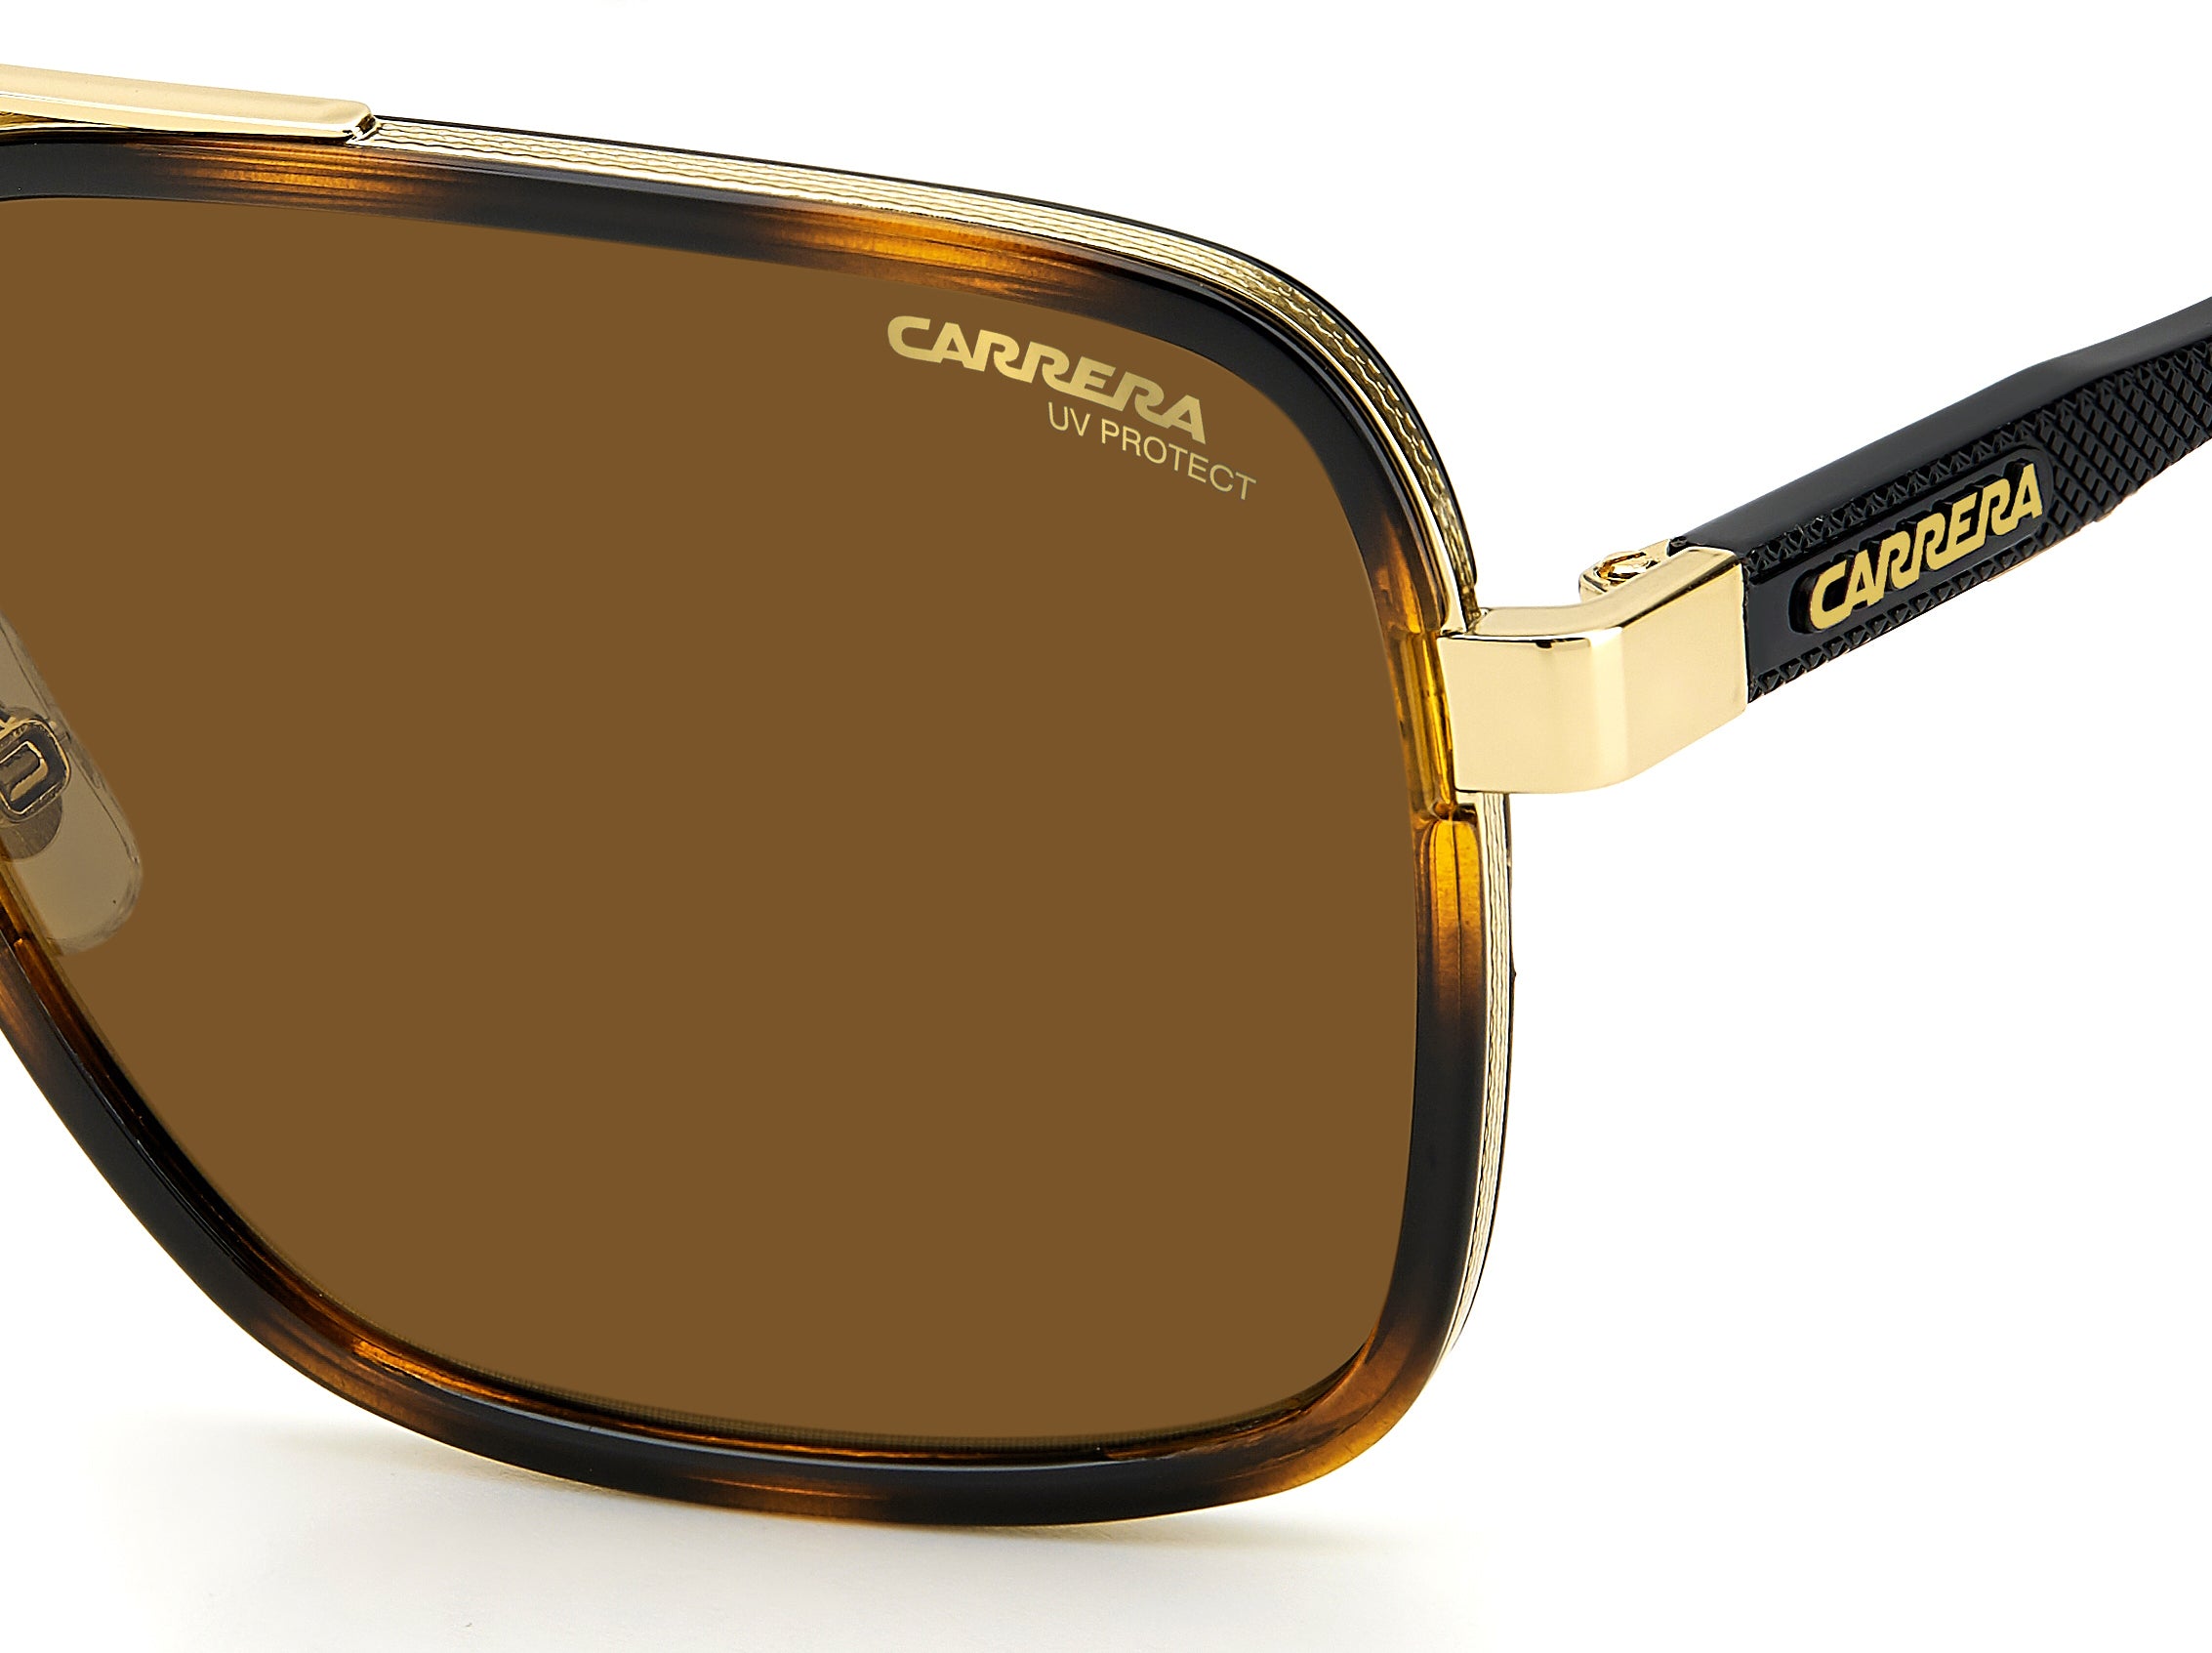 Carrera Square Sunglasses